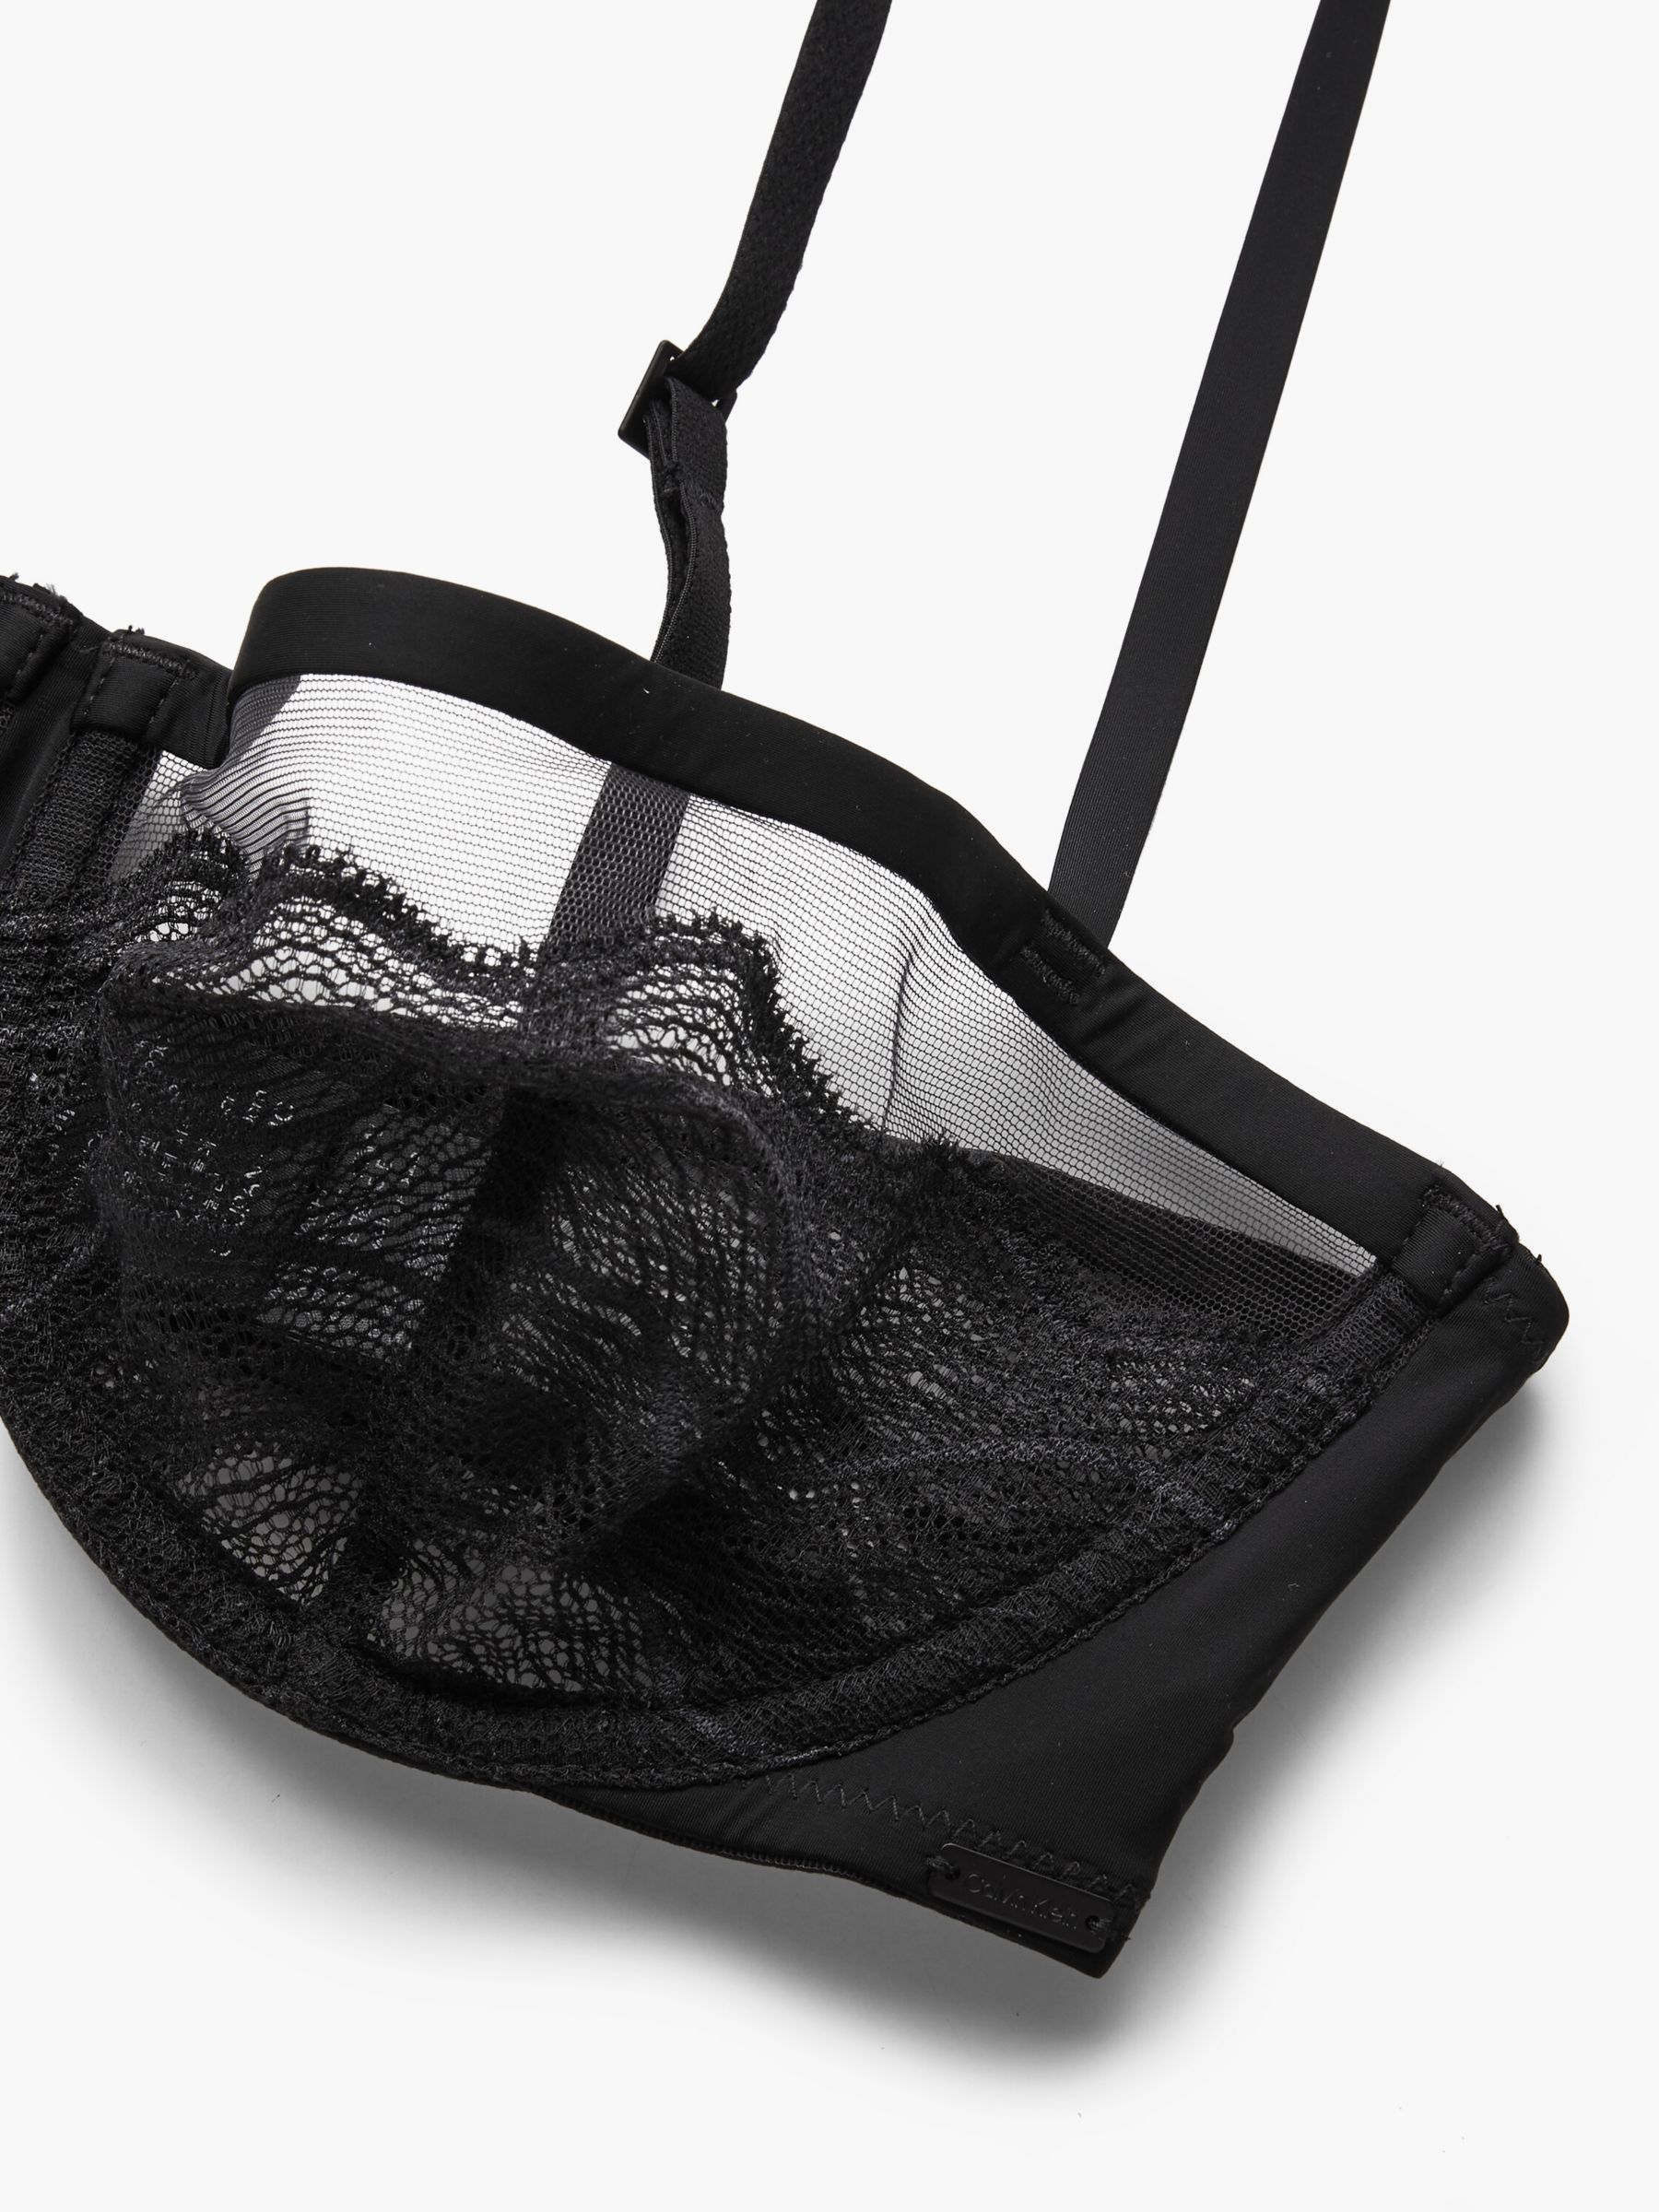 Calvin Klein Graphic Lace Balconette Bra, Black, 30B